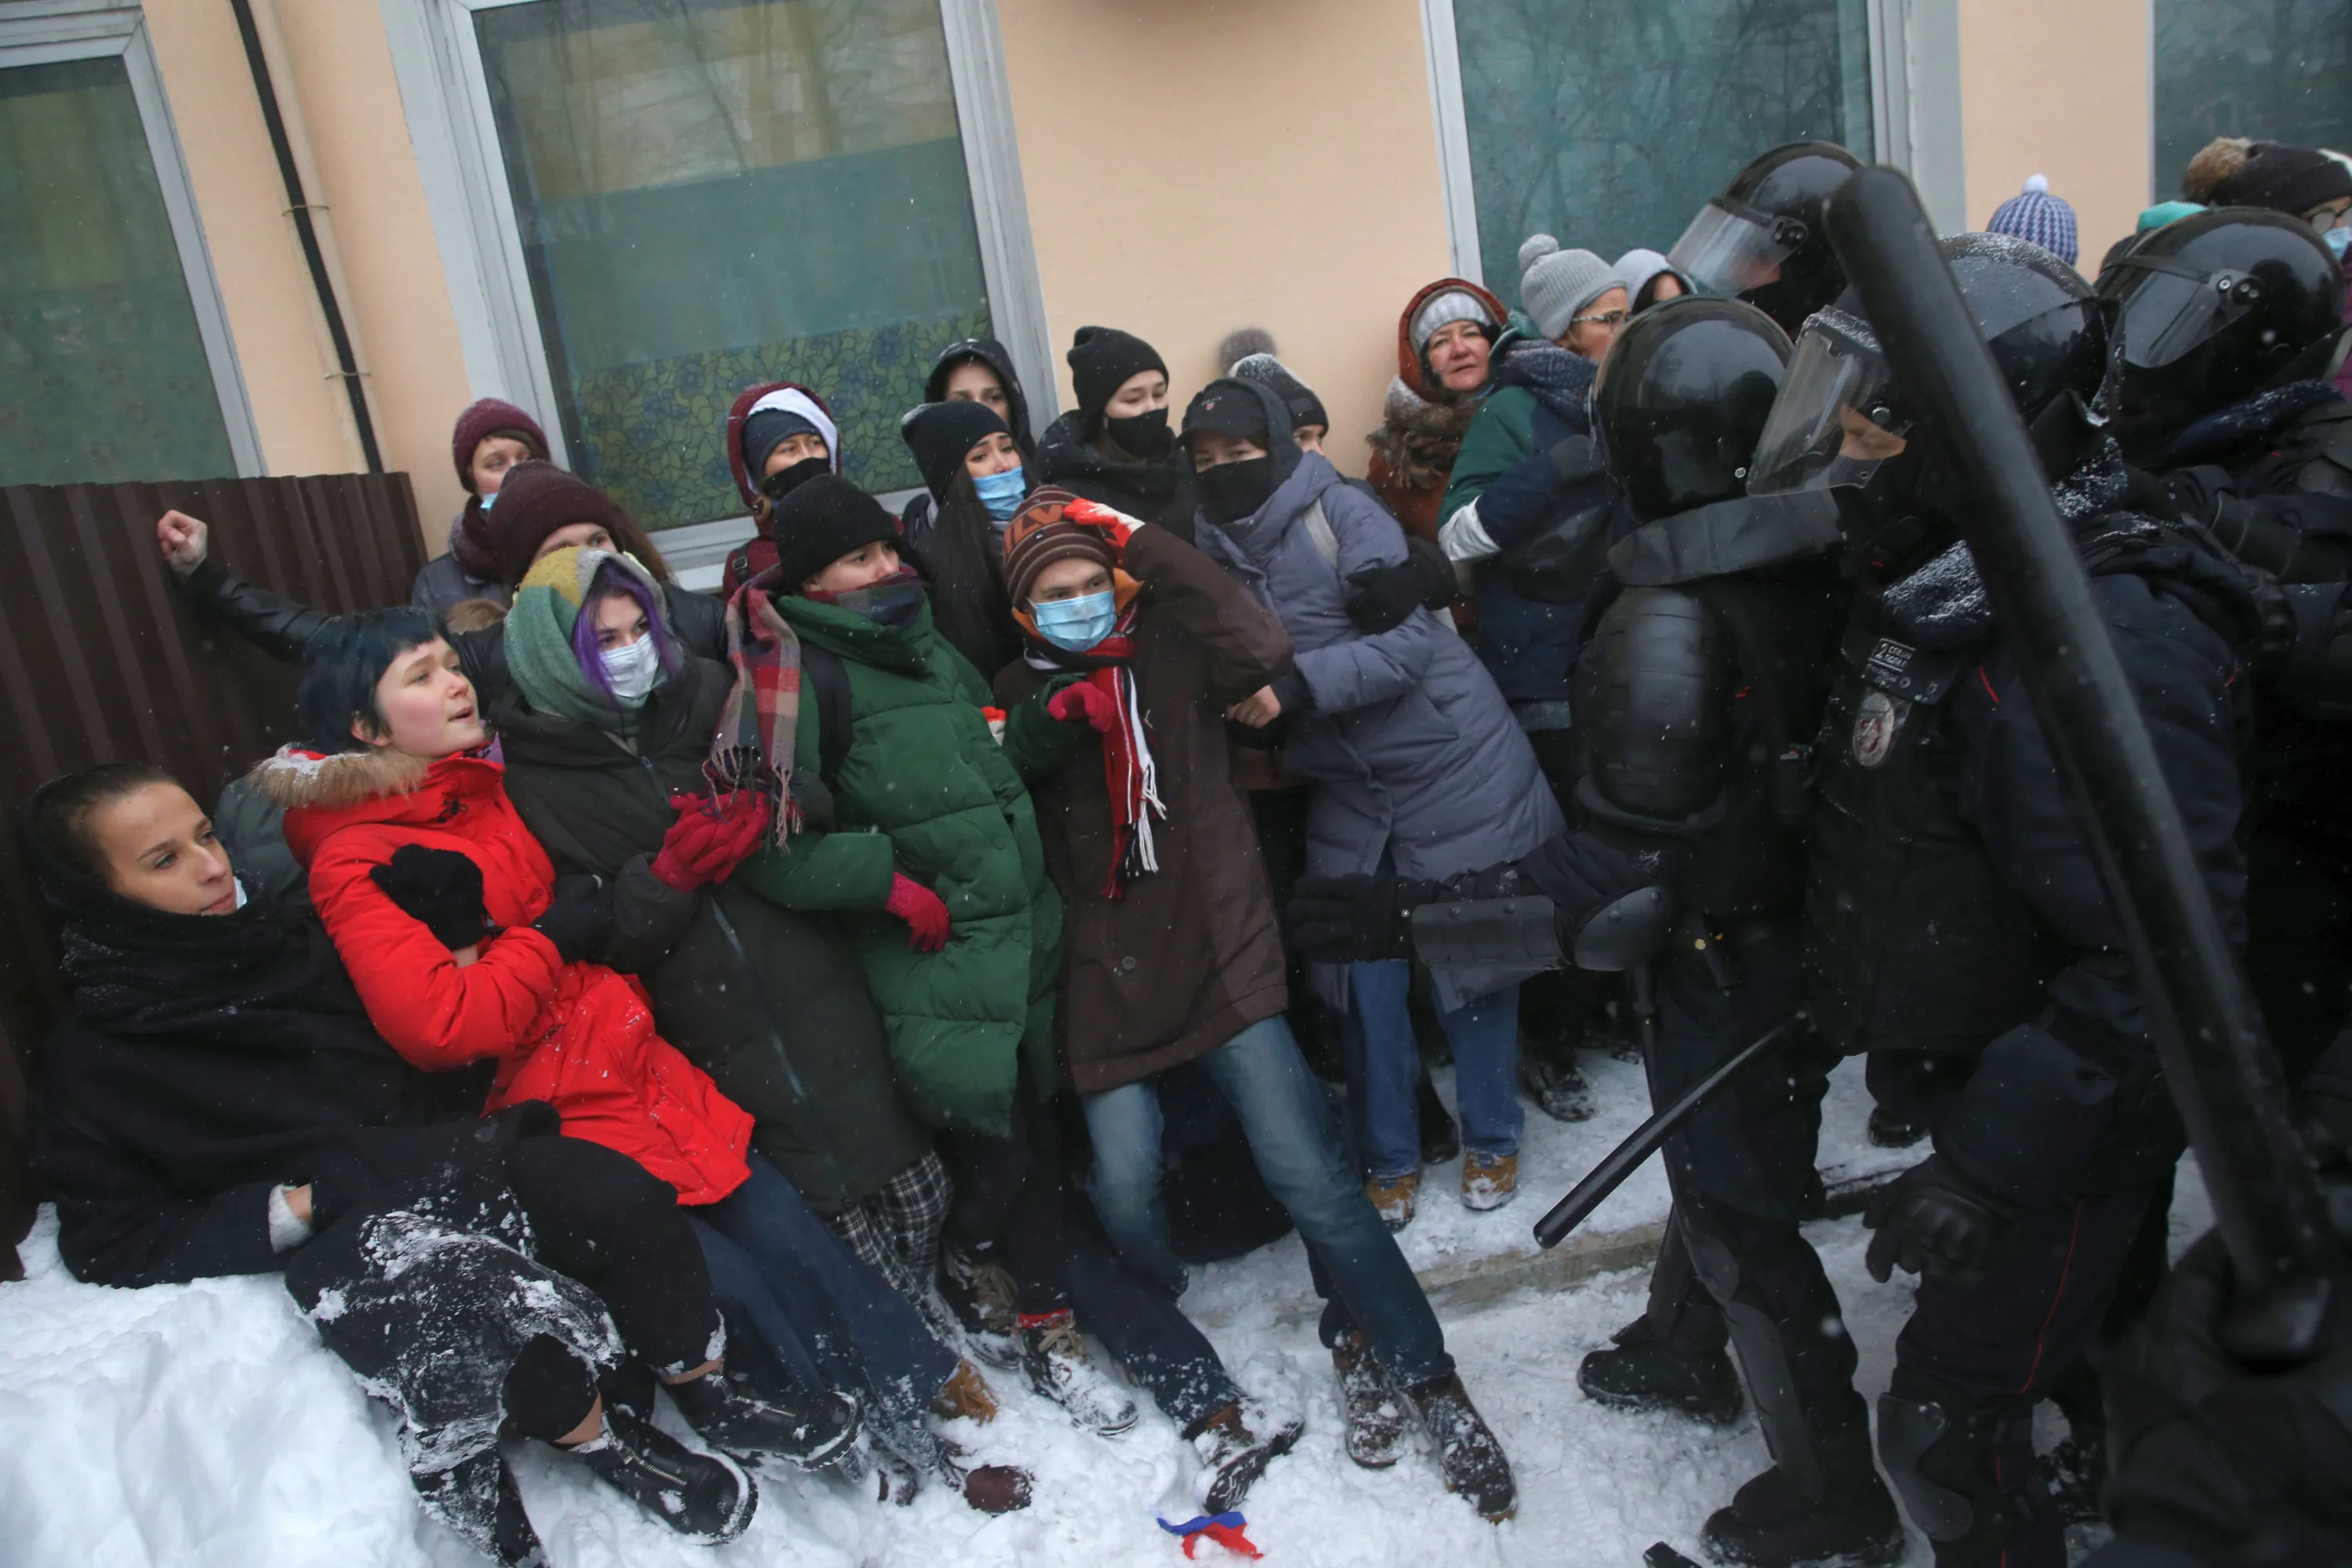 Бьют омон. Массовые протесты в России. Молодежь на митинге. ОМОН избивает митингующих в Москве. Митингующие избивают омоновцев.